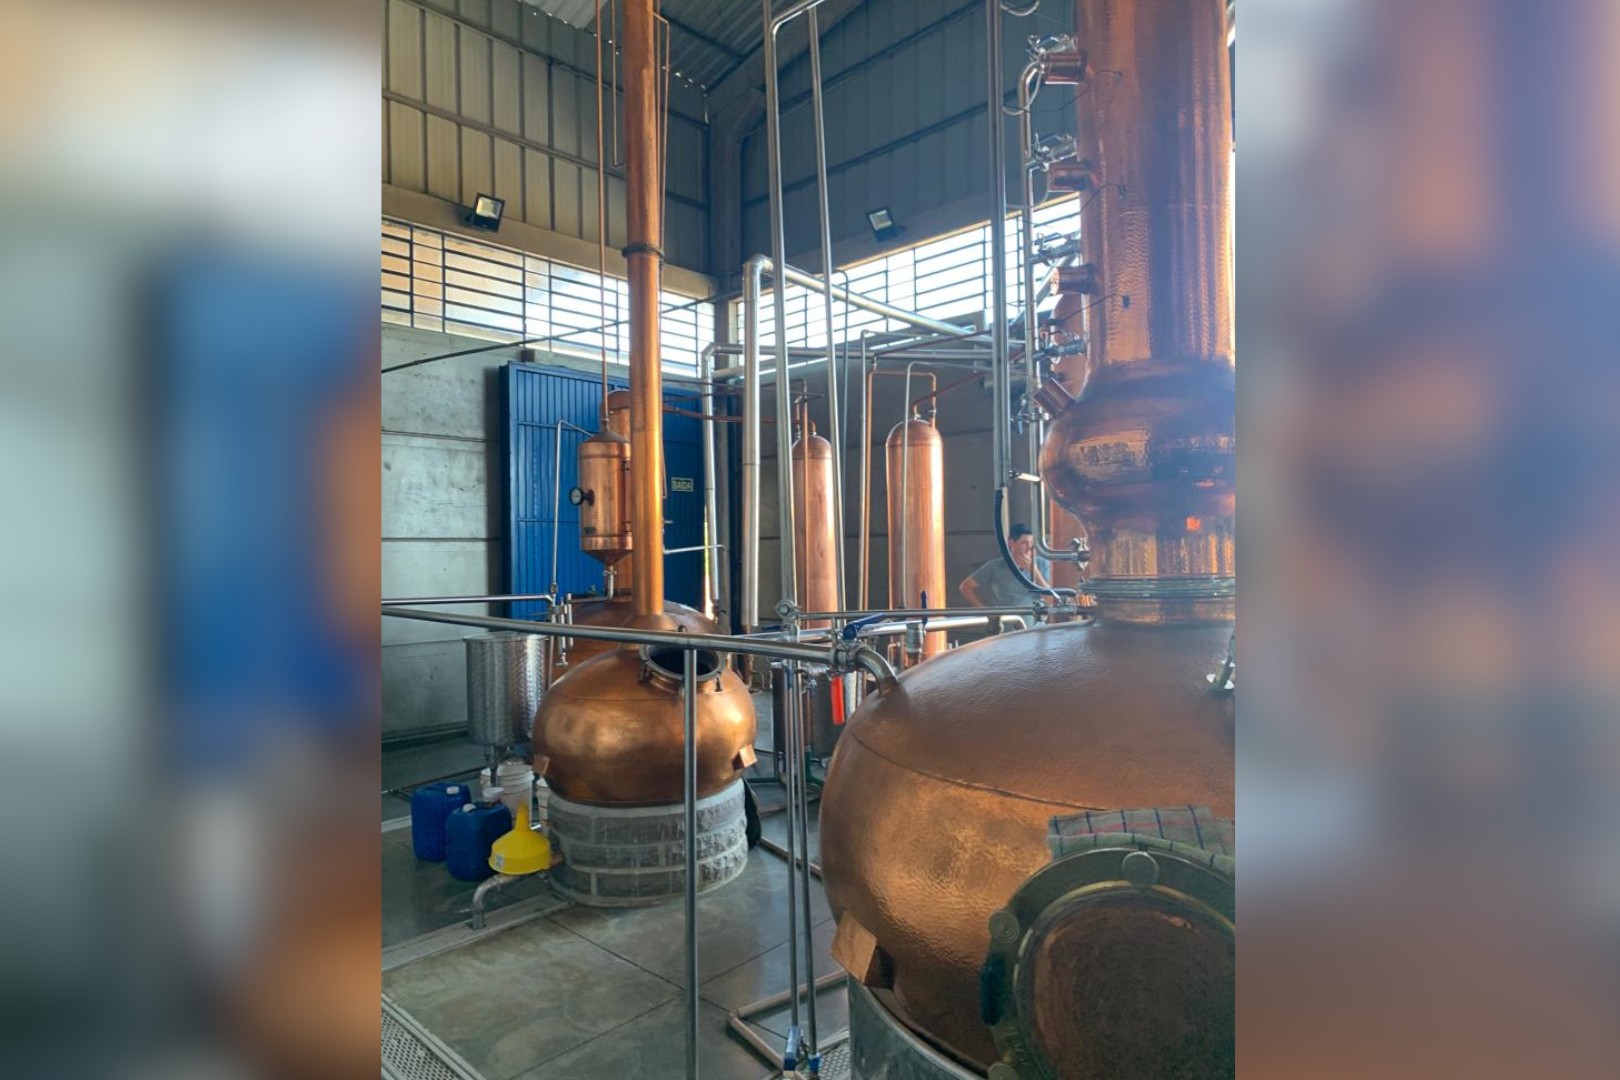  Iniciativa permitiu conhecer o processo produtivo de destilados